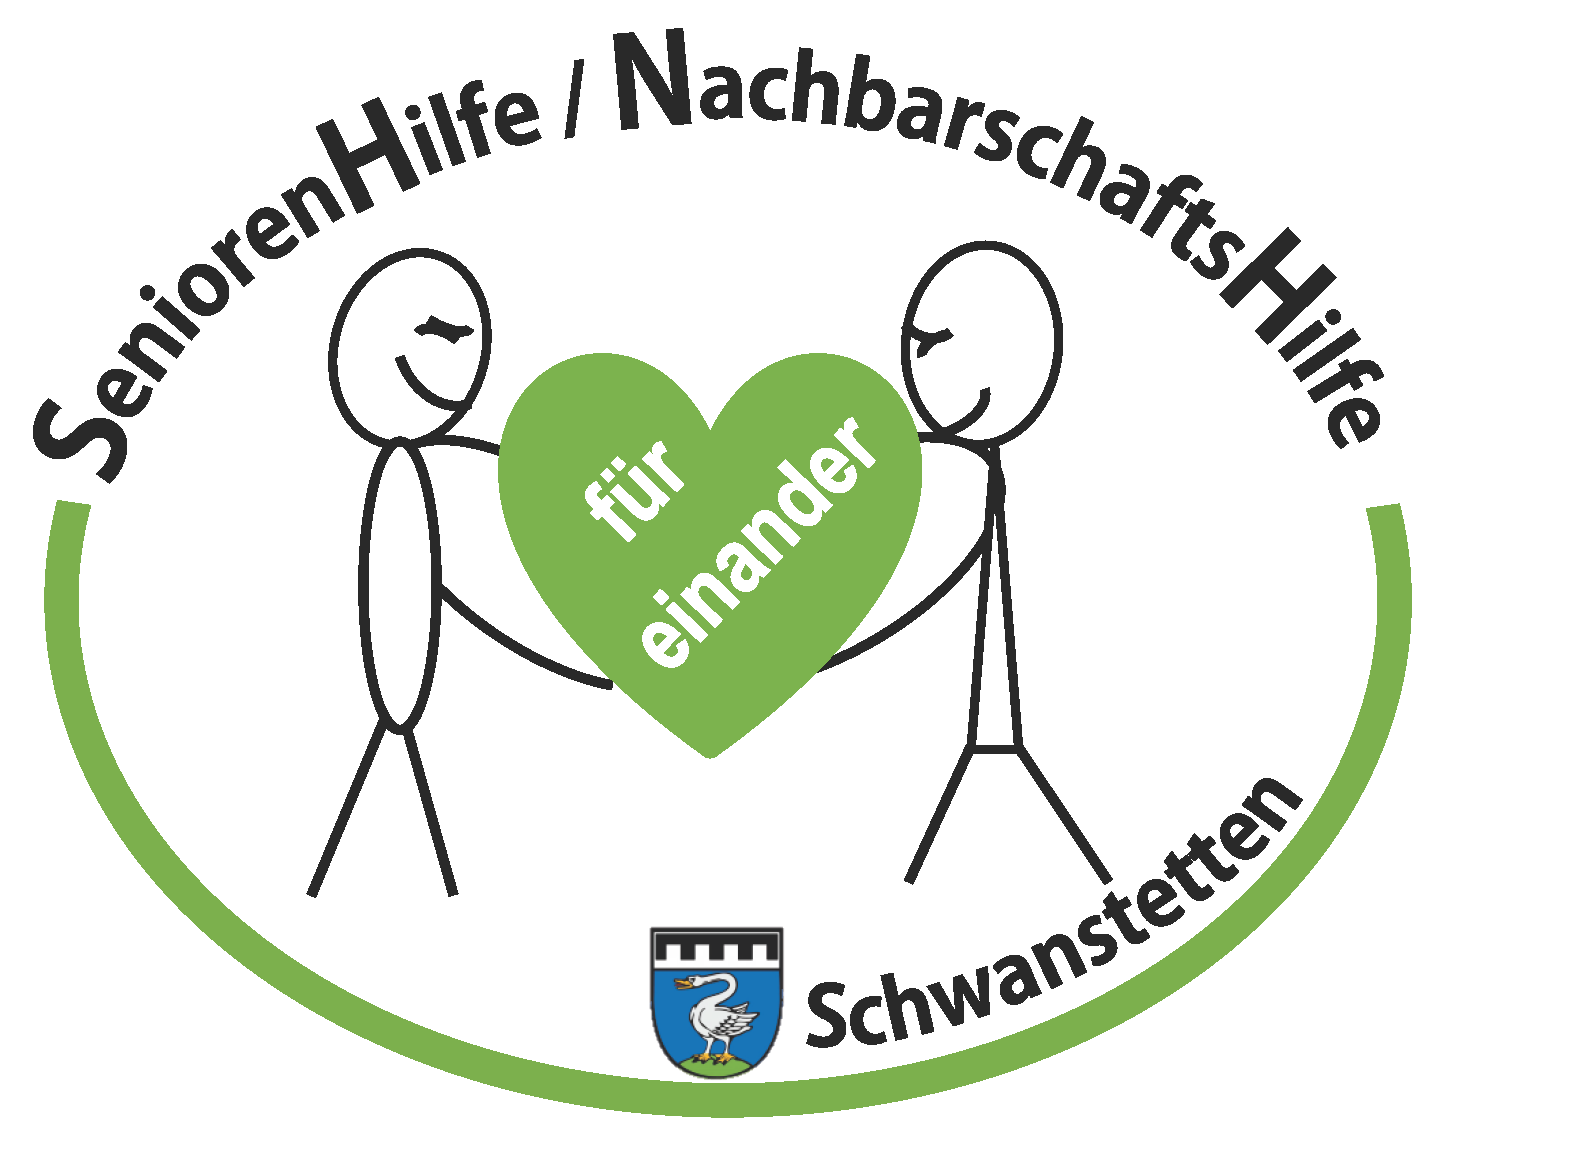  Logo Senioren- und Nachbarschaftshilfe 